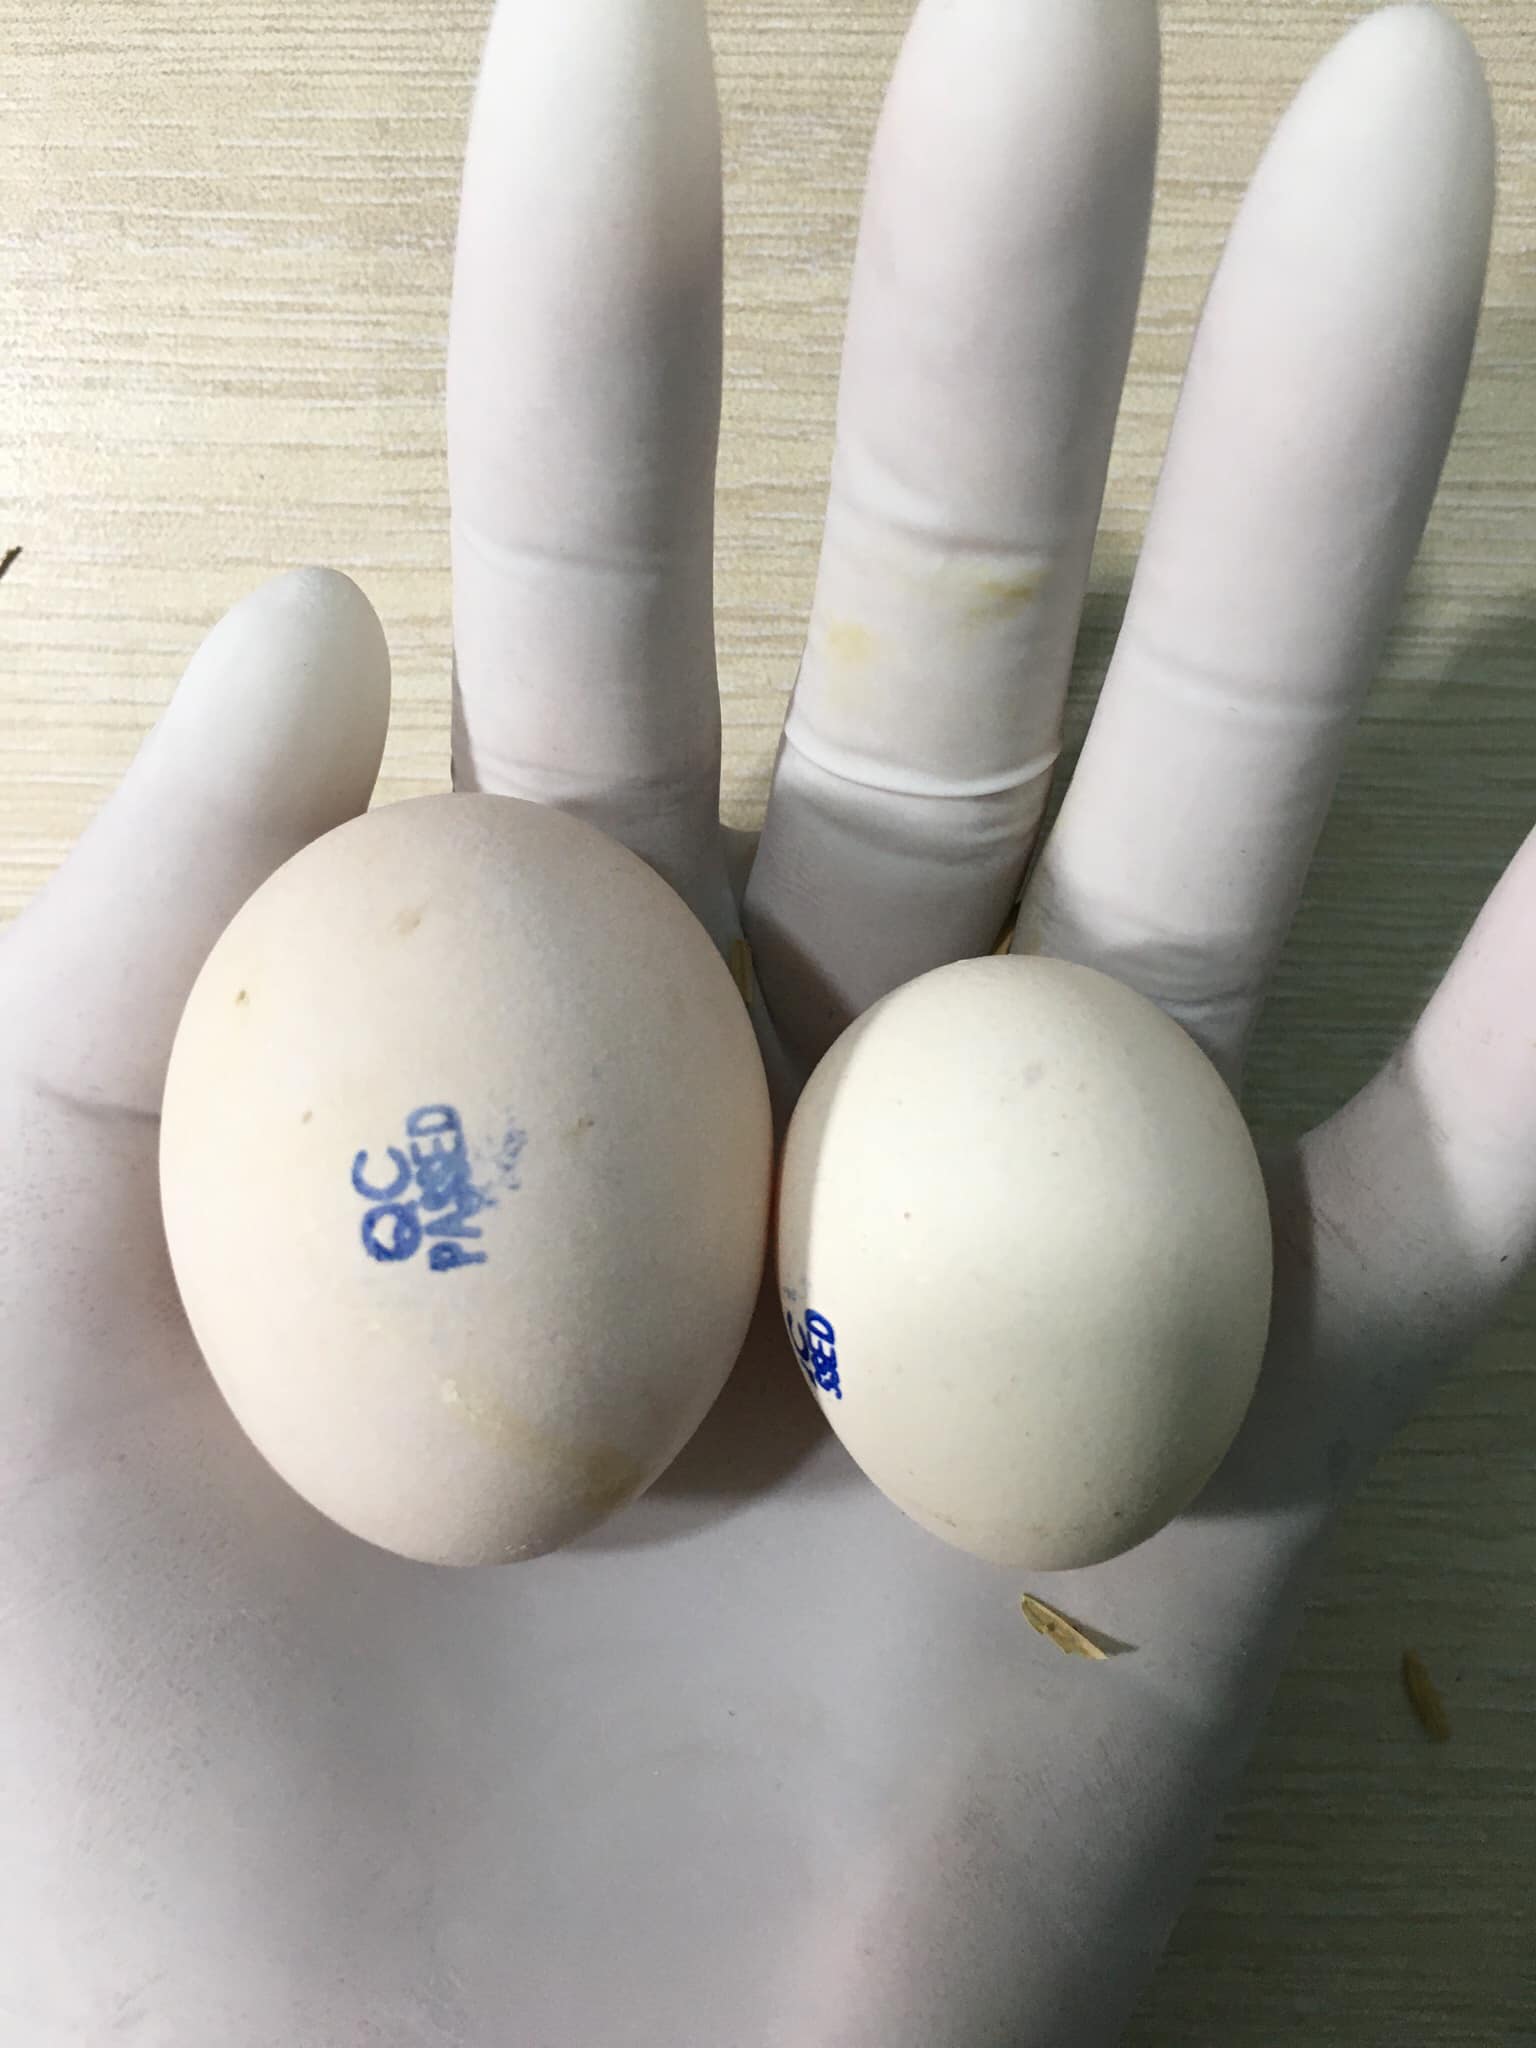 Trứng gà ác loại 1 (có dấu QC)